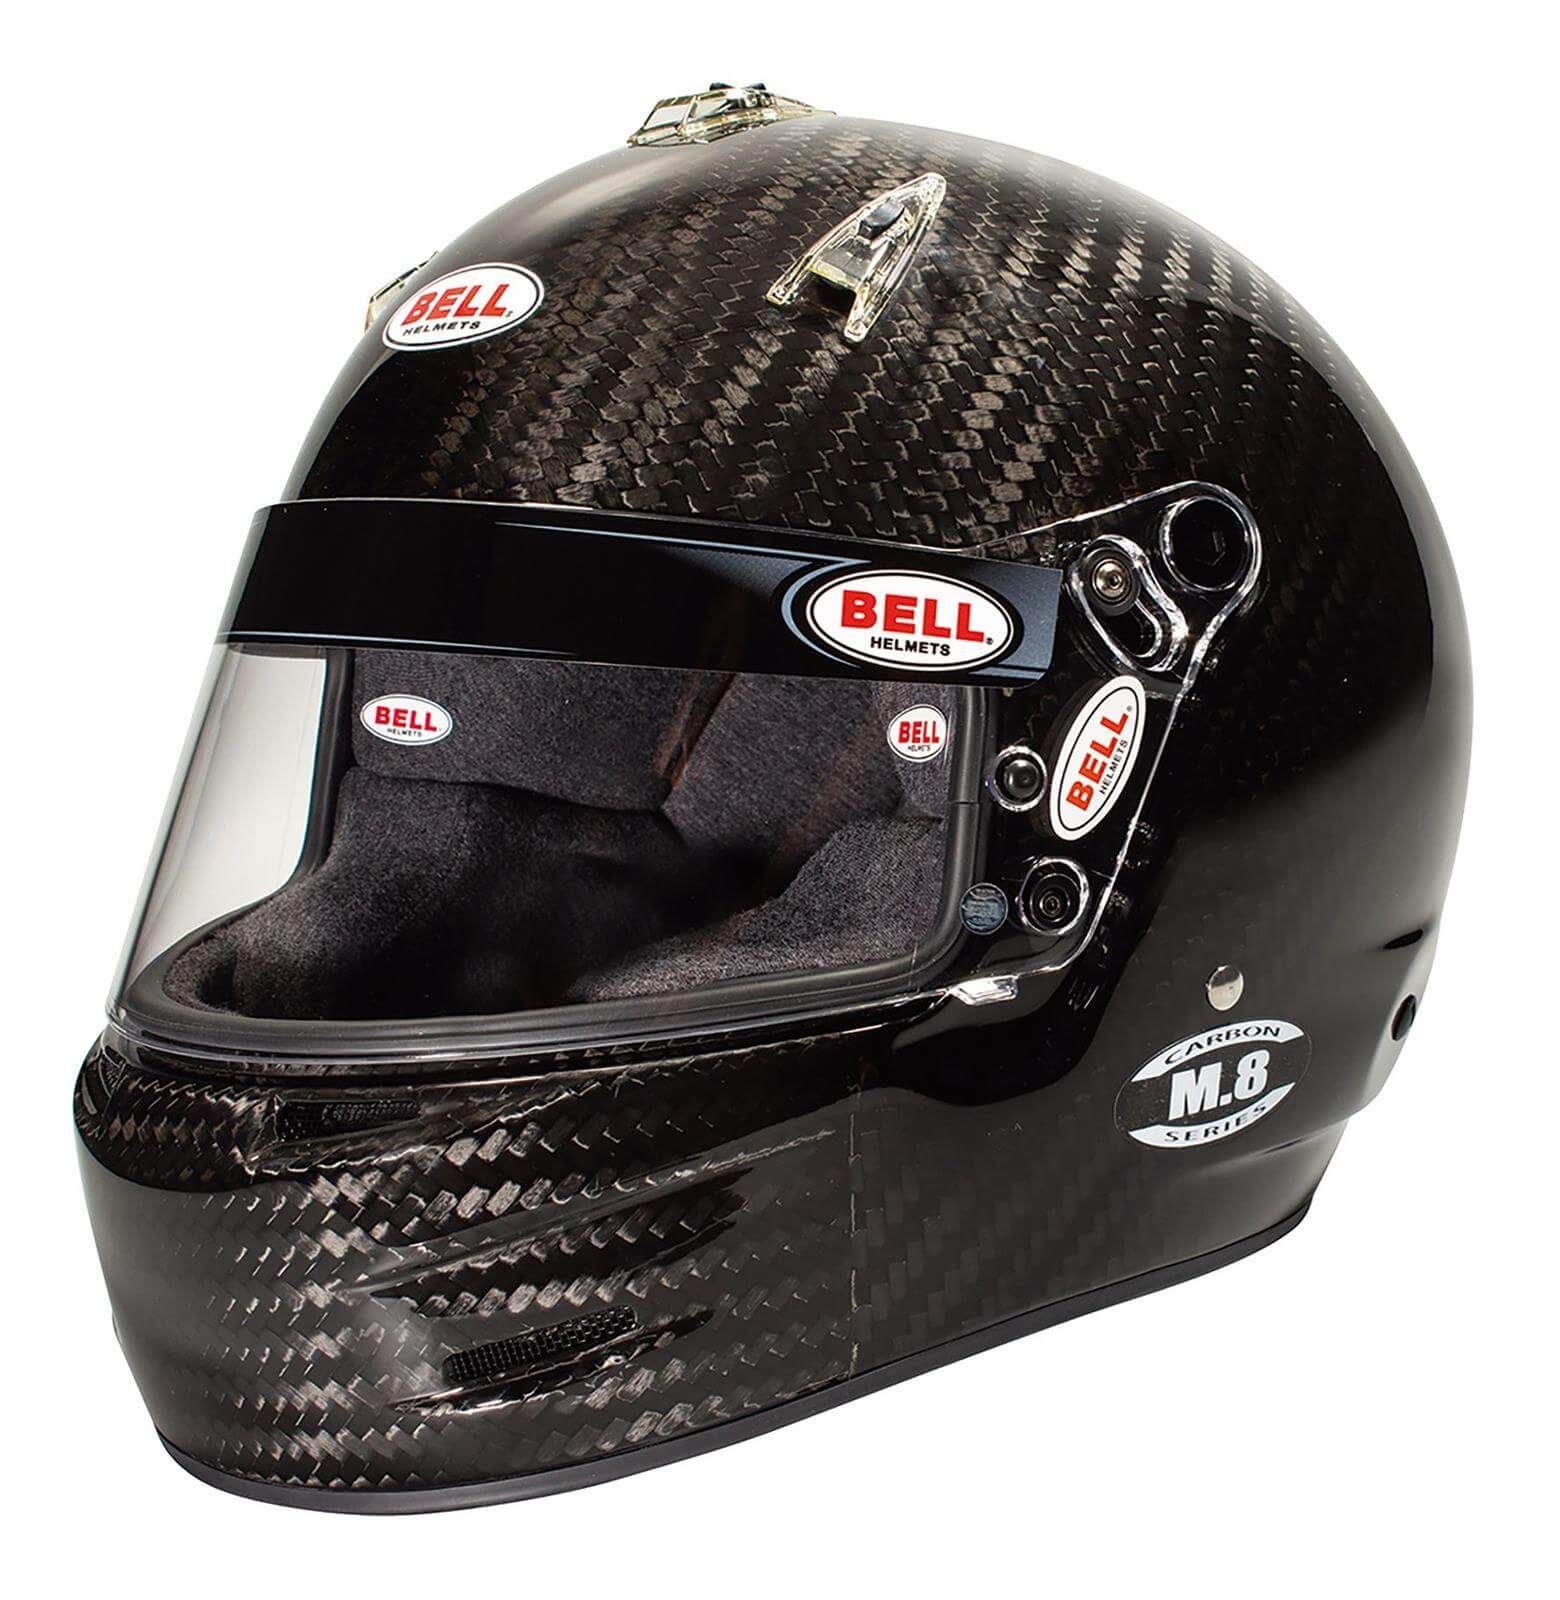 M8 Carbon Helmet - $1159.95